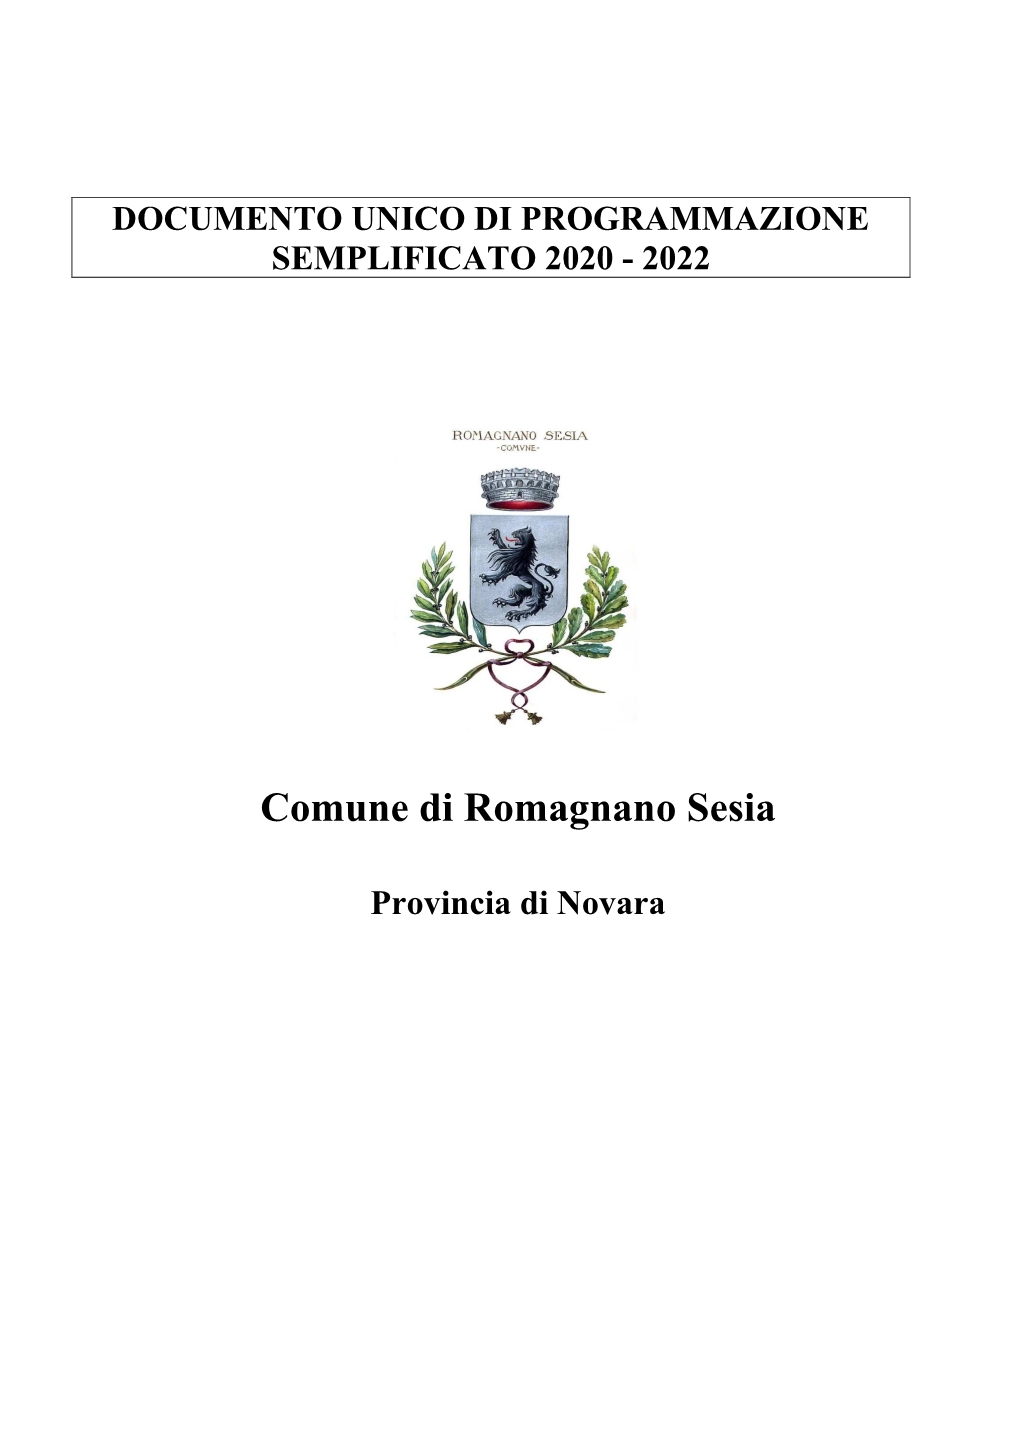 Elenco Enti Pubblici Vigilati Dal Comune Di Romagnano Sesia Art. 22, Comma 1 Lett.A E 2 D-Lgs- 14 Marzo 2013, N